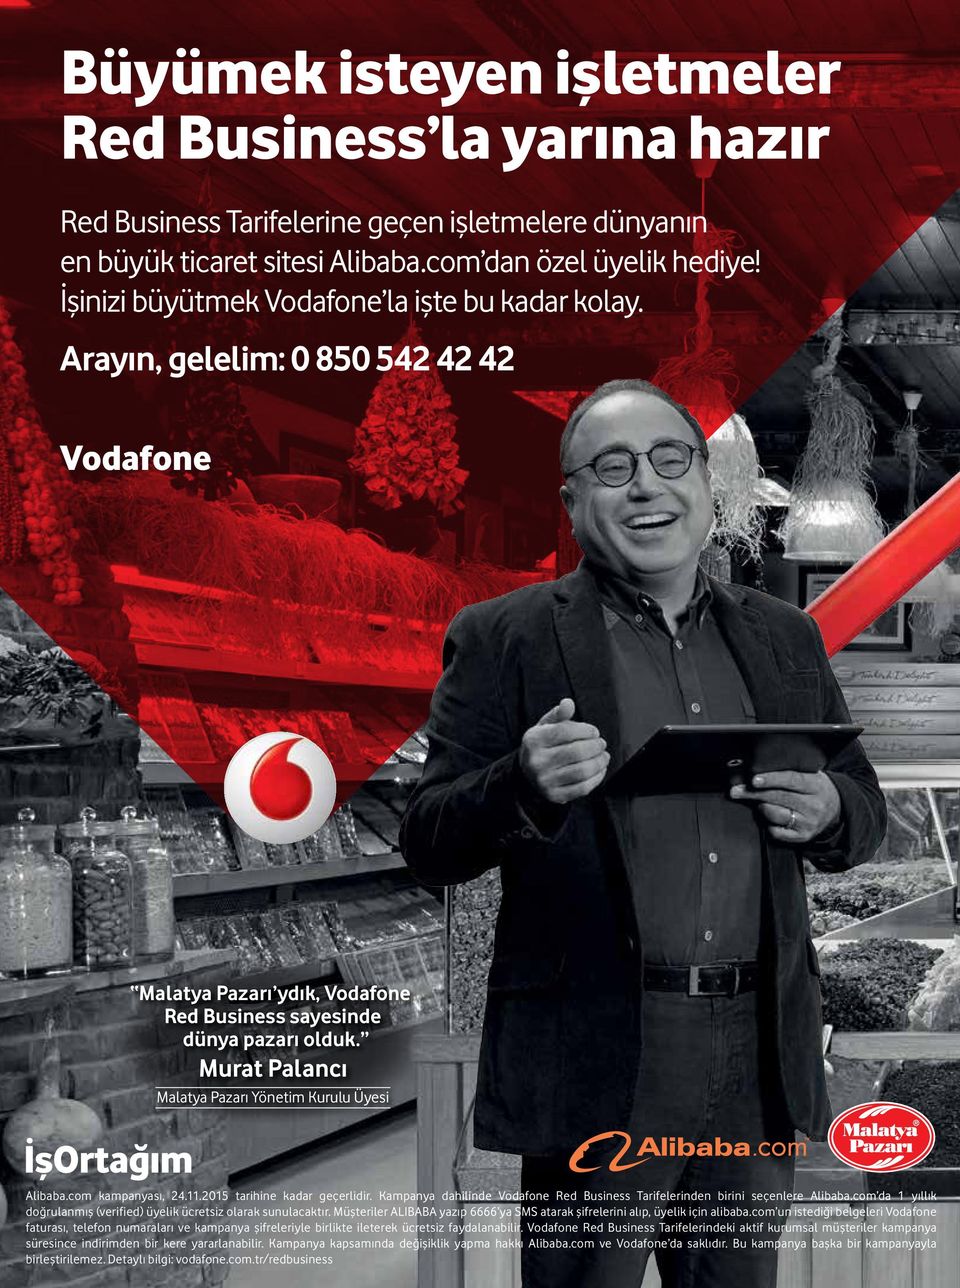 Murat Palancı Malatya Pazarı Yönetim Kurulu Üyesi Alibaba.com kampanyası, 24.11.2015 tarihine kadar geçerlidir. Kampanya dahilinde Vodafone Red Business Tarifelerinden birini seçenlere Alibaba.